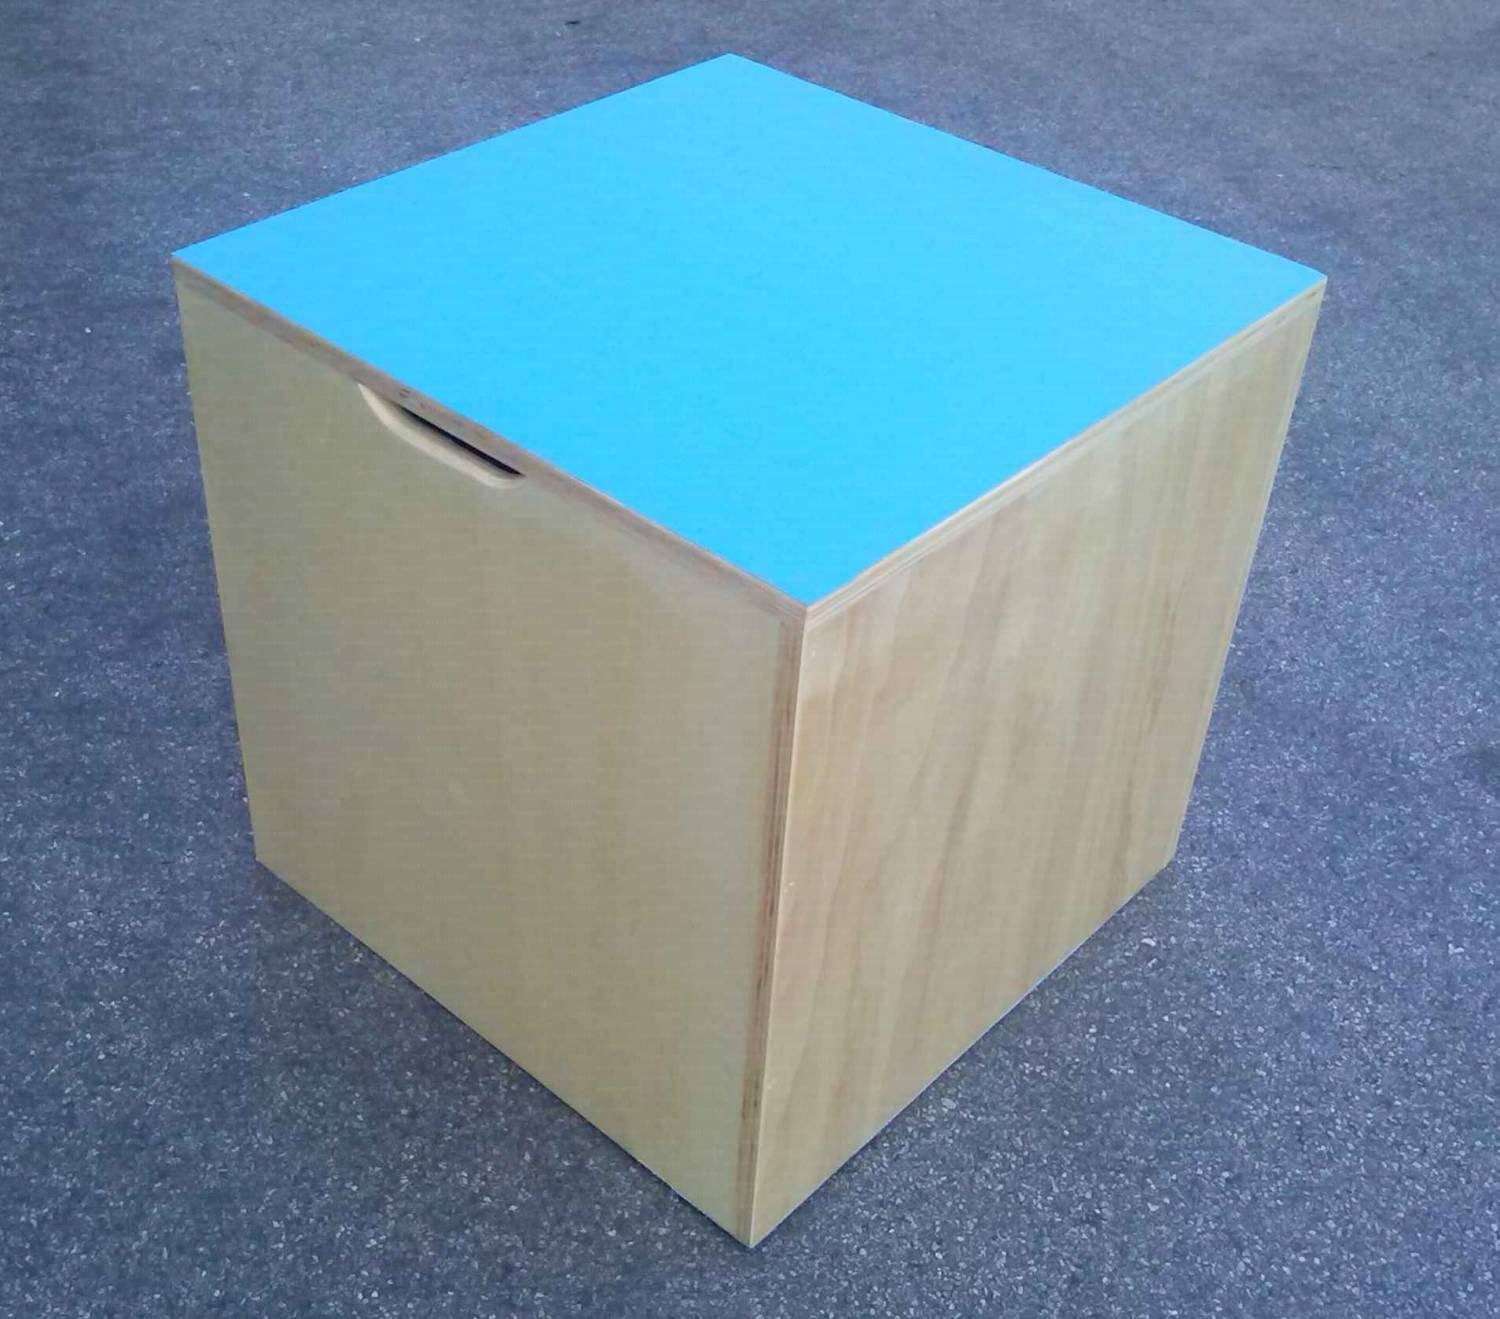 Cubo propriocettivo misura 60x60x60 cm., in legno con fondo e piano superiore dotato di antiscivolo, con impugnature per il trasporto.